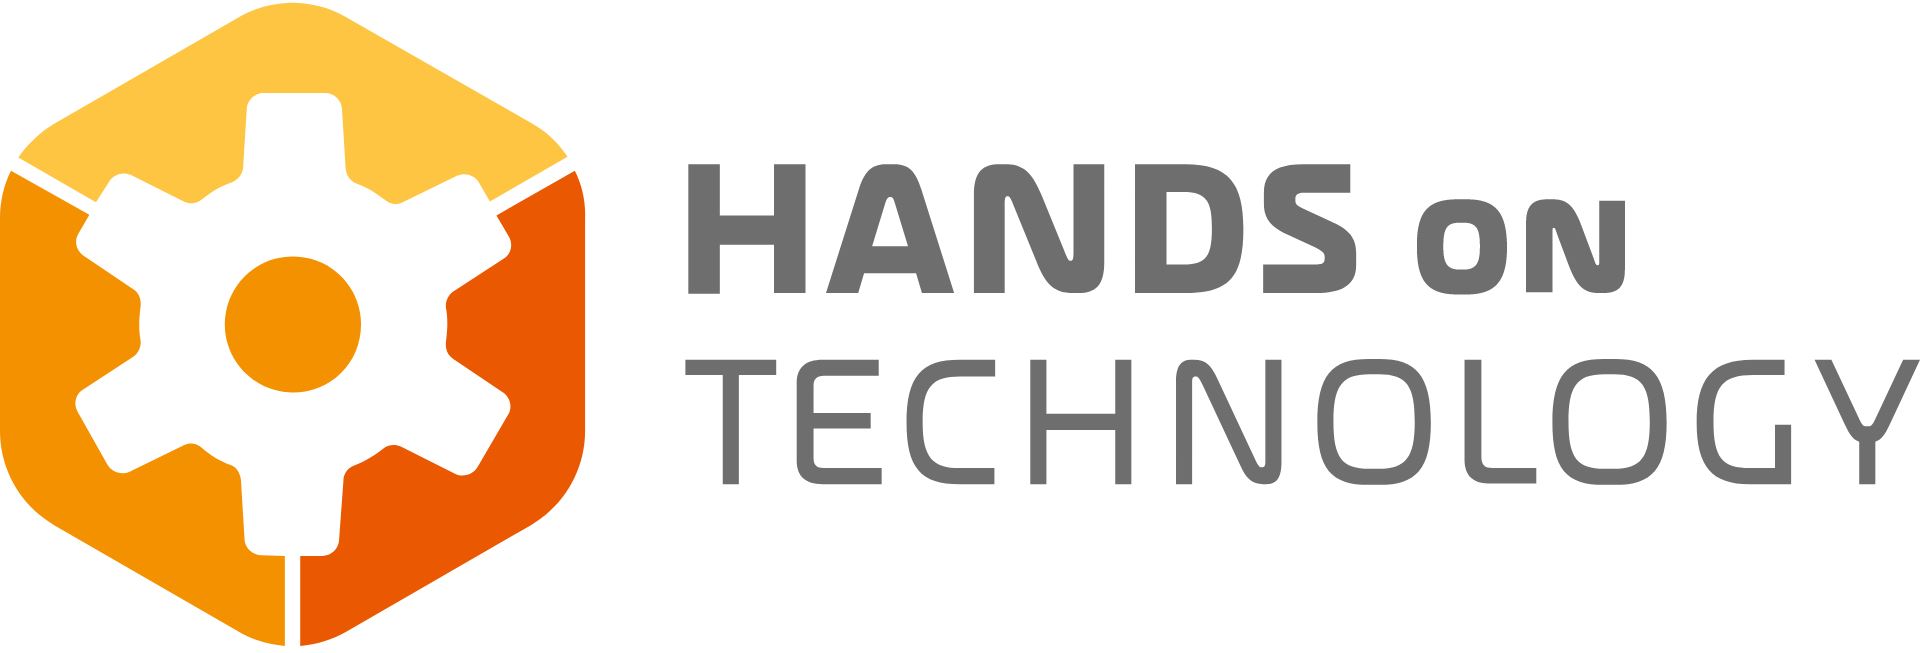 Hands on Technology e.V.